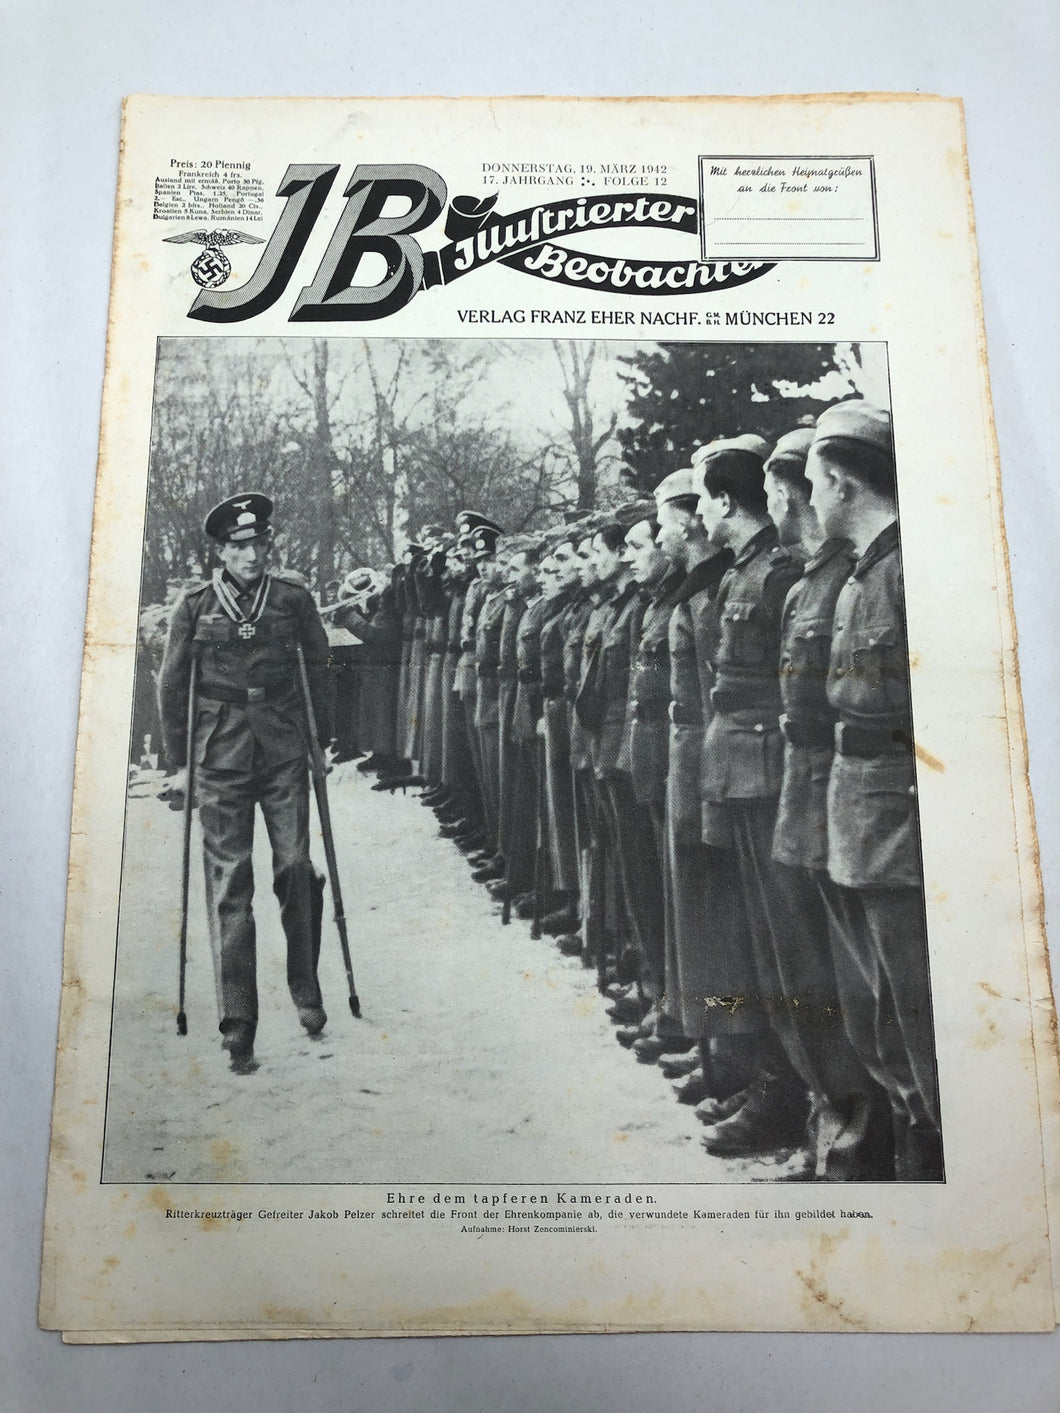 JB Juustrierter Beobachter NSDAP Magazine Original WW2 German - 19th March 1942